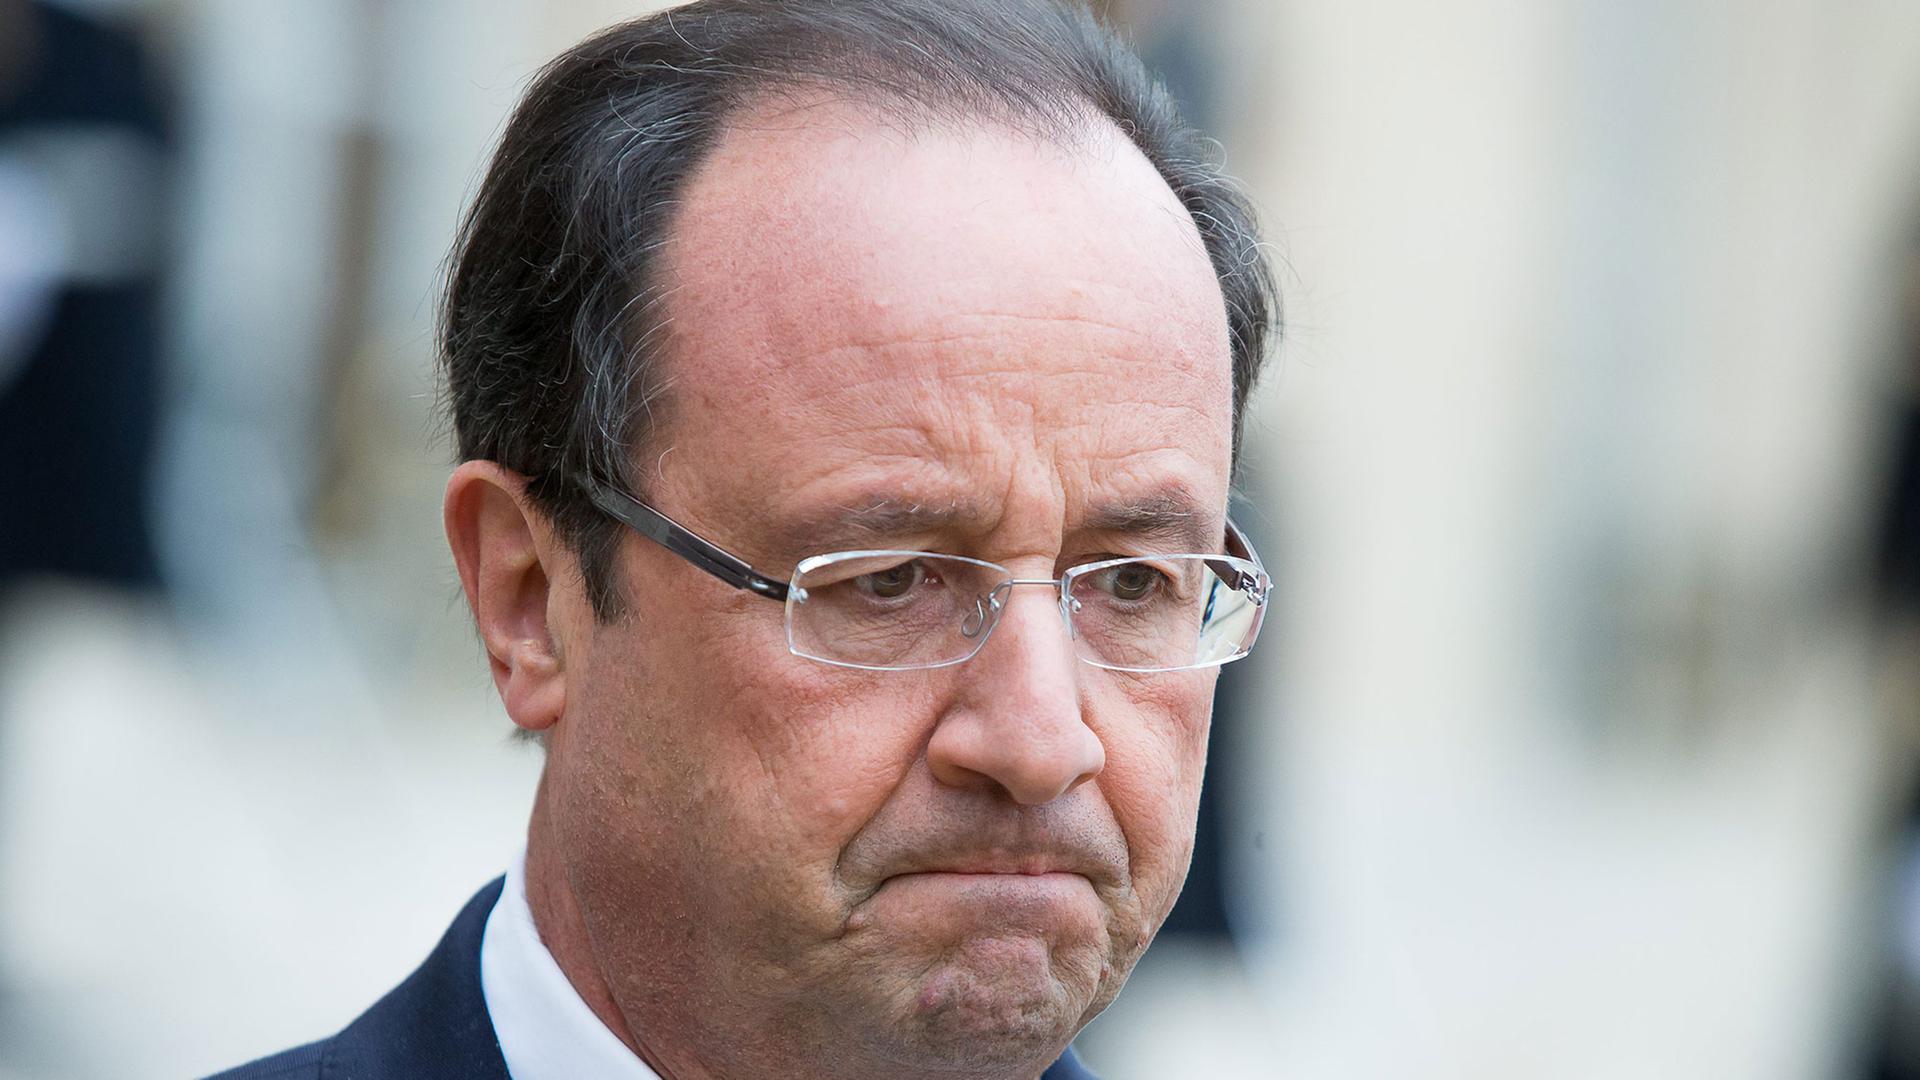 Porträtaufnahme von Frankreichs Staatspräsident François Hollande mit verkniffenem Gesichtsausdruck